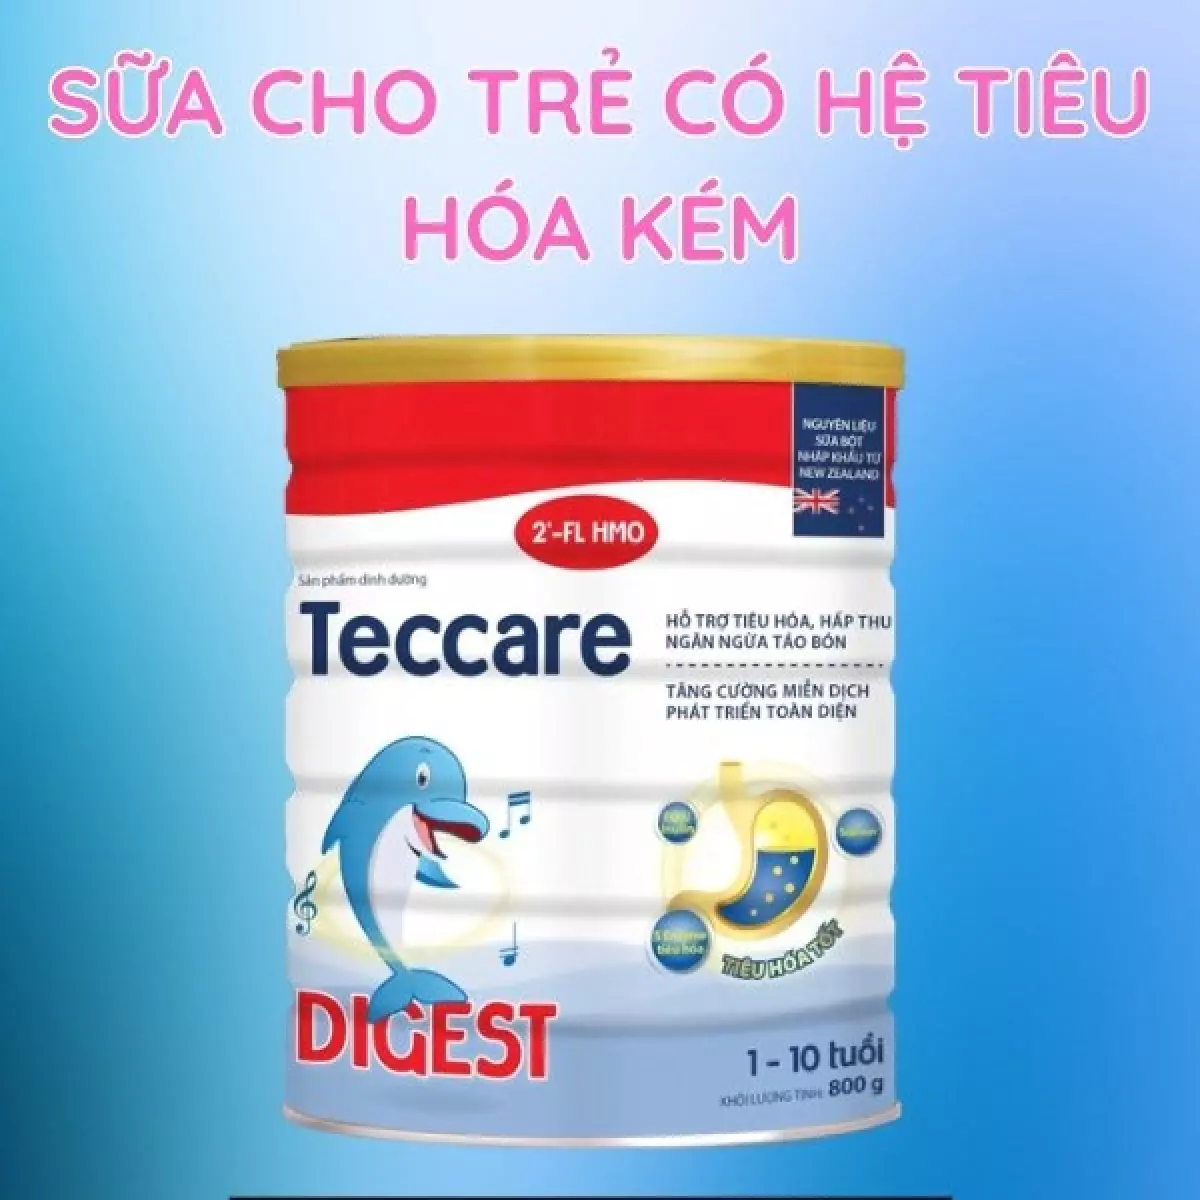 Sữa Teccare Digest dành cho trẻ có hệ tiêu hóa kém